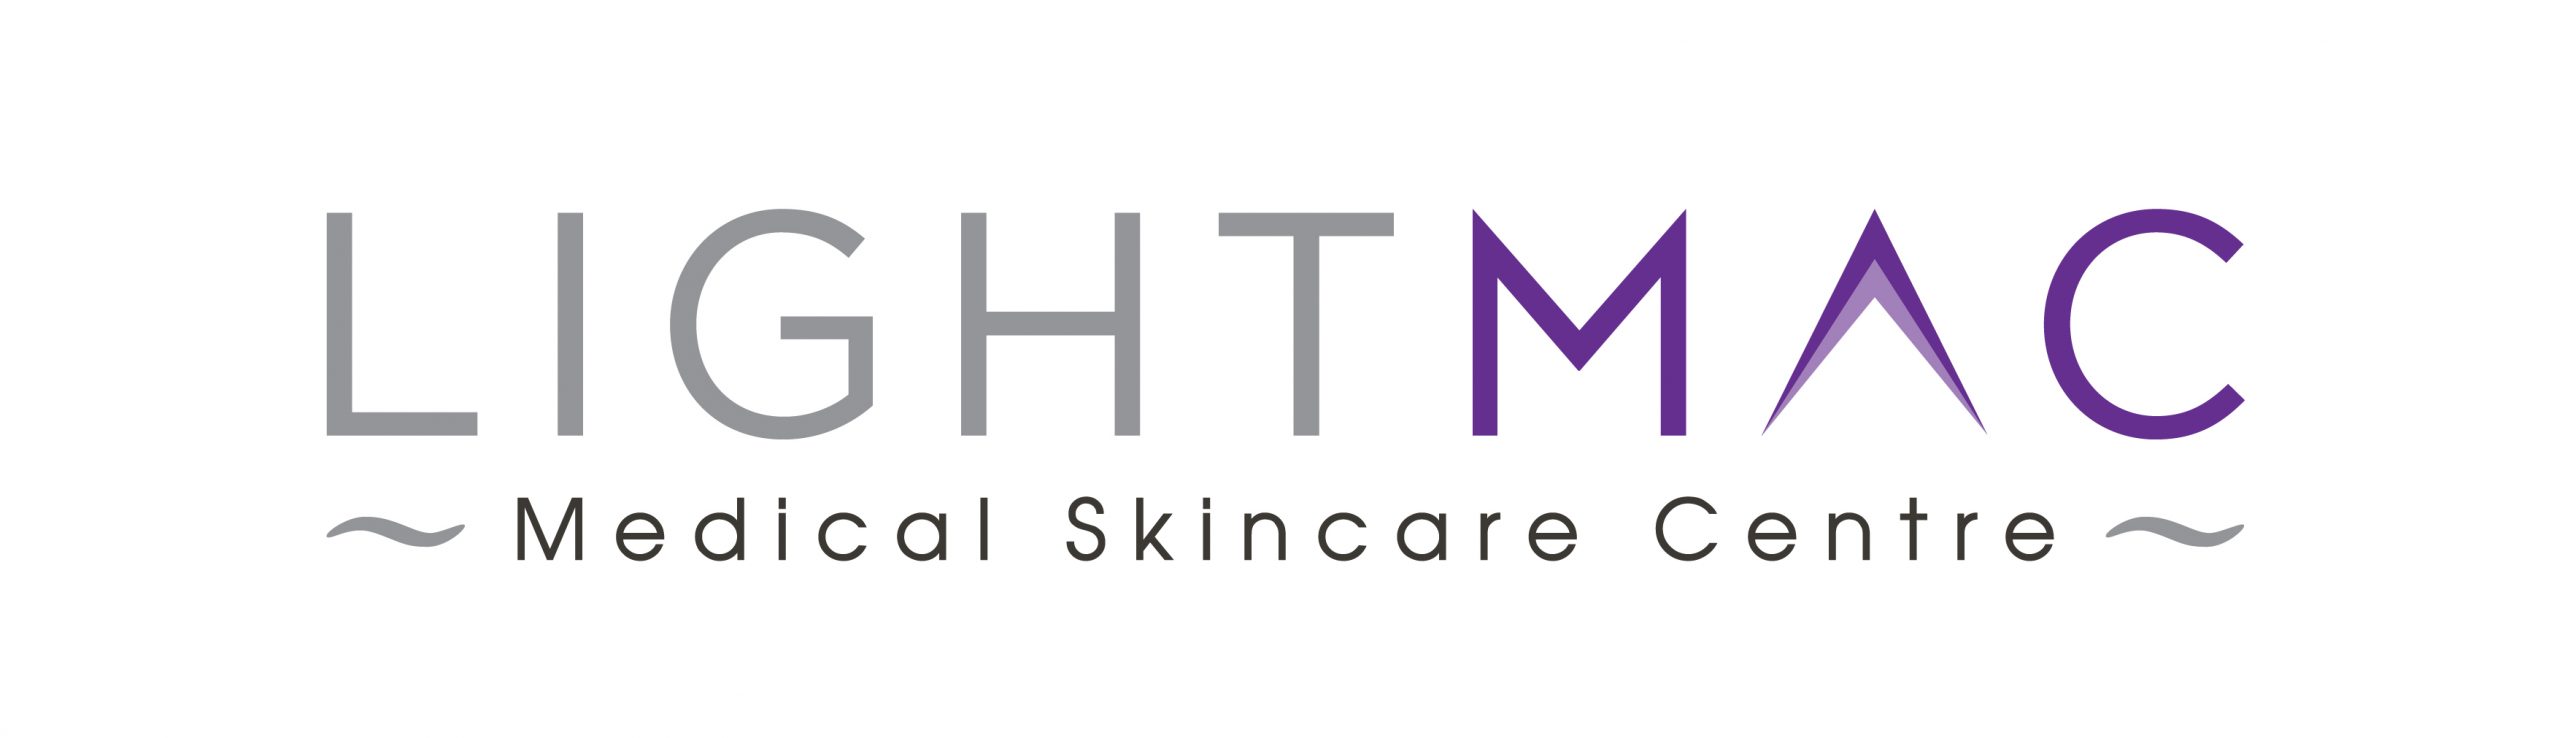 LightMAC Medical Skincare Centre